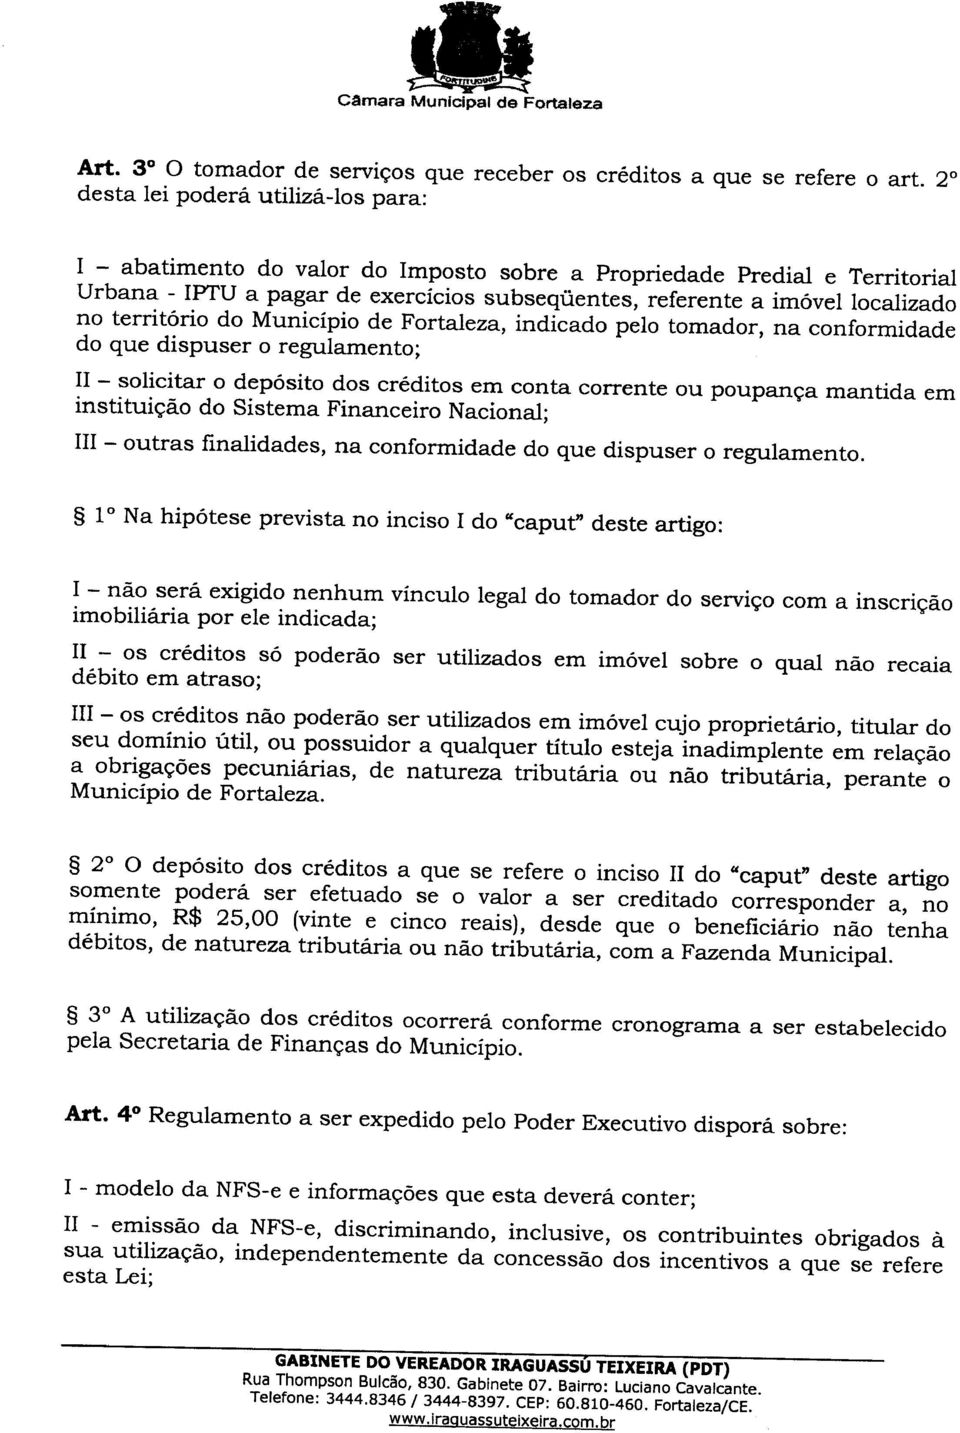 territorio do Municipio de Fortaleza, indicado pelo tomador, na conformidade do que dispuser 0 regulamento; II - solicitar 0 deposito dos creditos em conta corrente ou poupan<;a mantida em